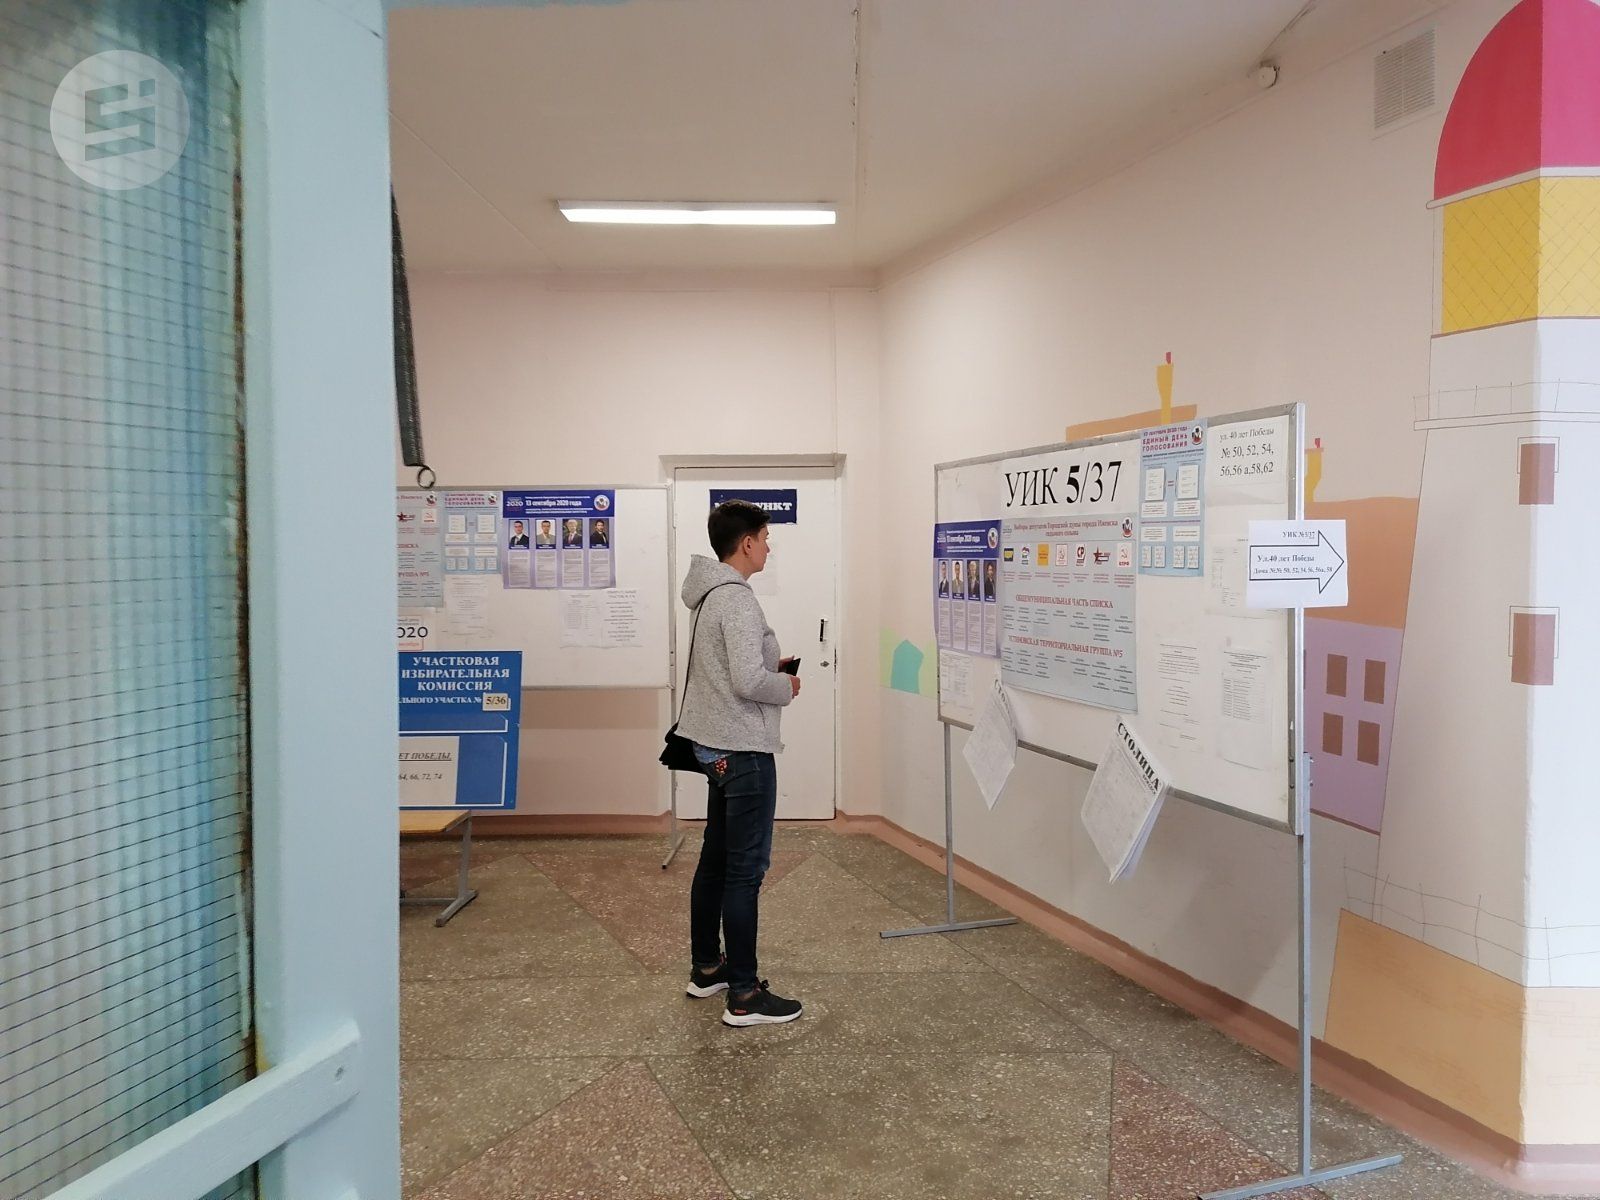 Явка на выборы депутатов Гордумы в Ижевске на 10:00 составила 9,28%